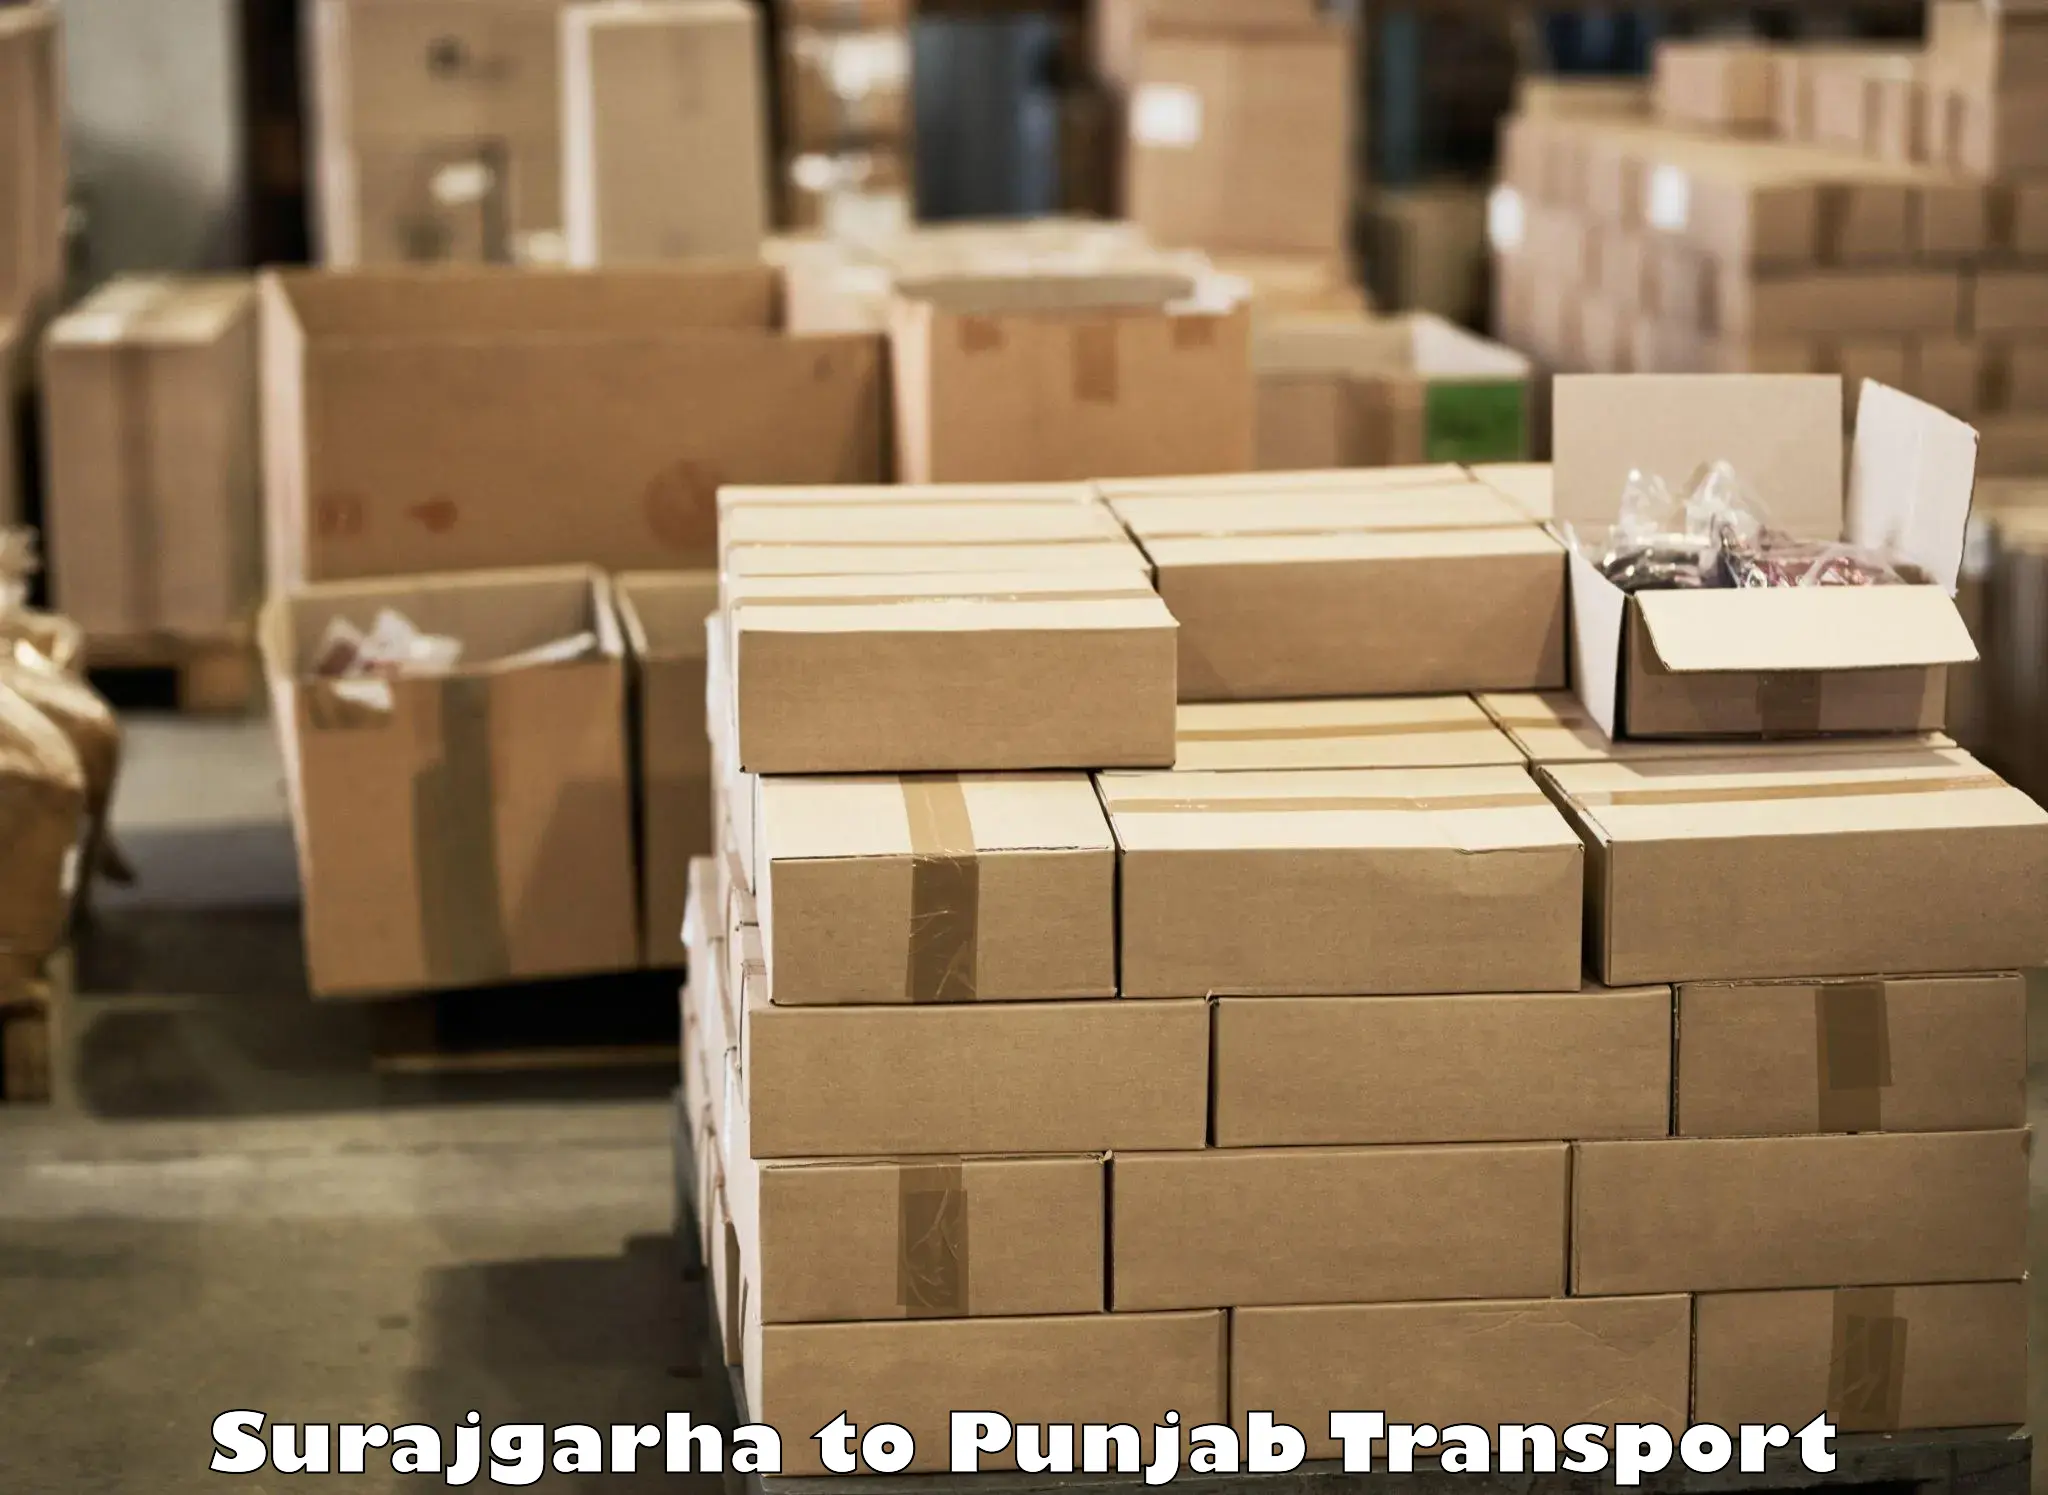 Interstate transport services Surajgarha to Punjab